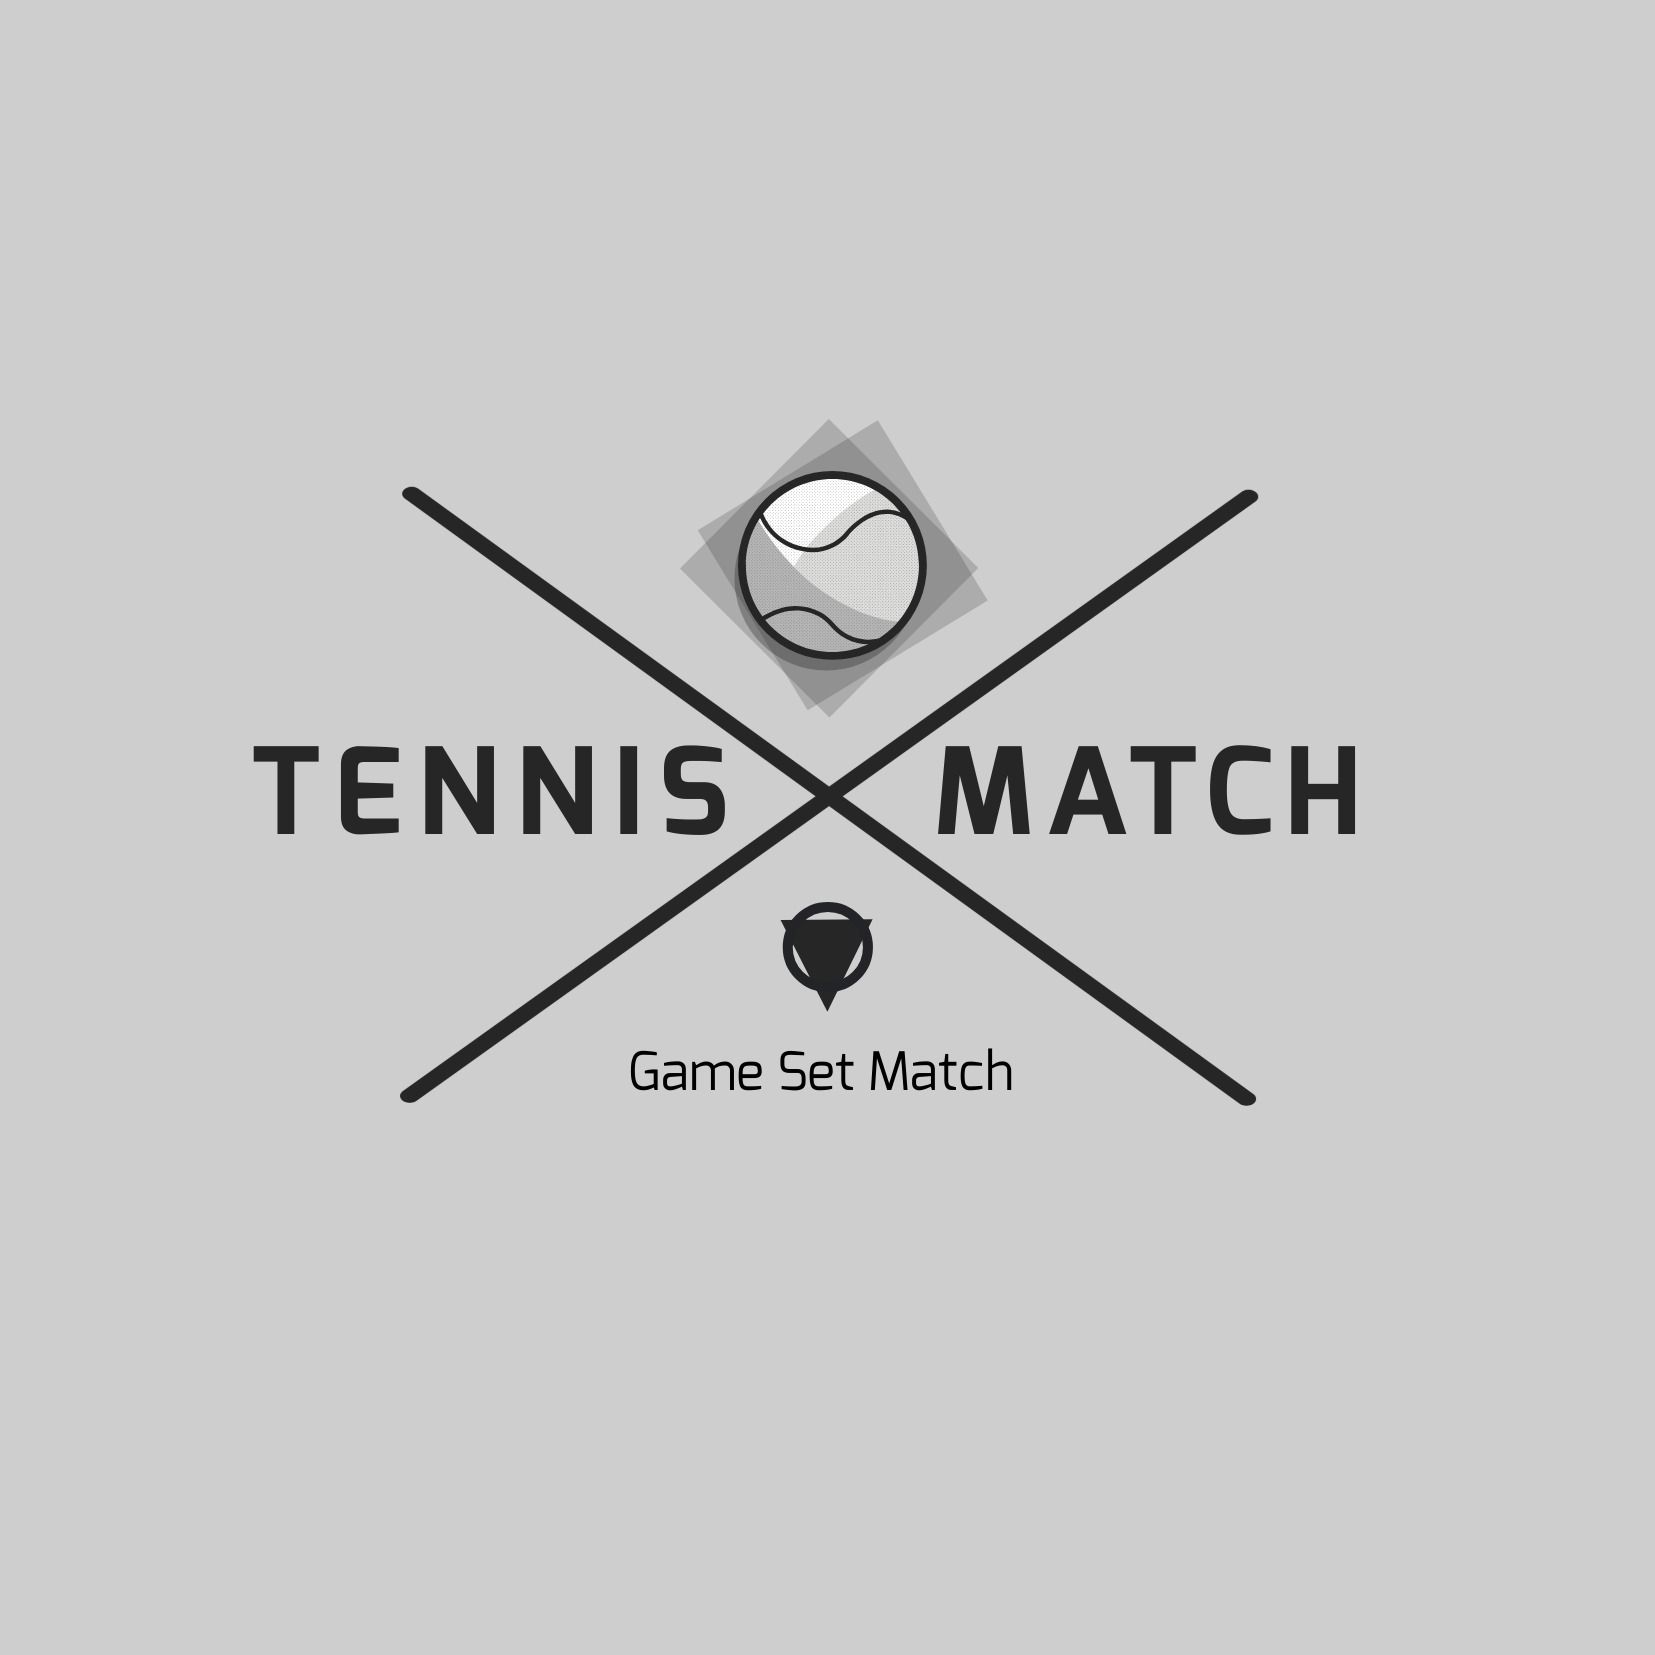 Logotipo del partido de tenis - Exo es una fuente futurista y elegante - Imagen